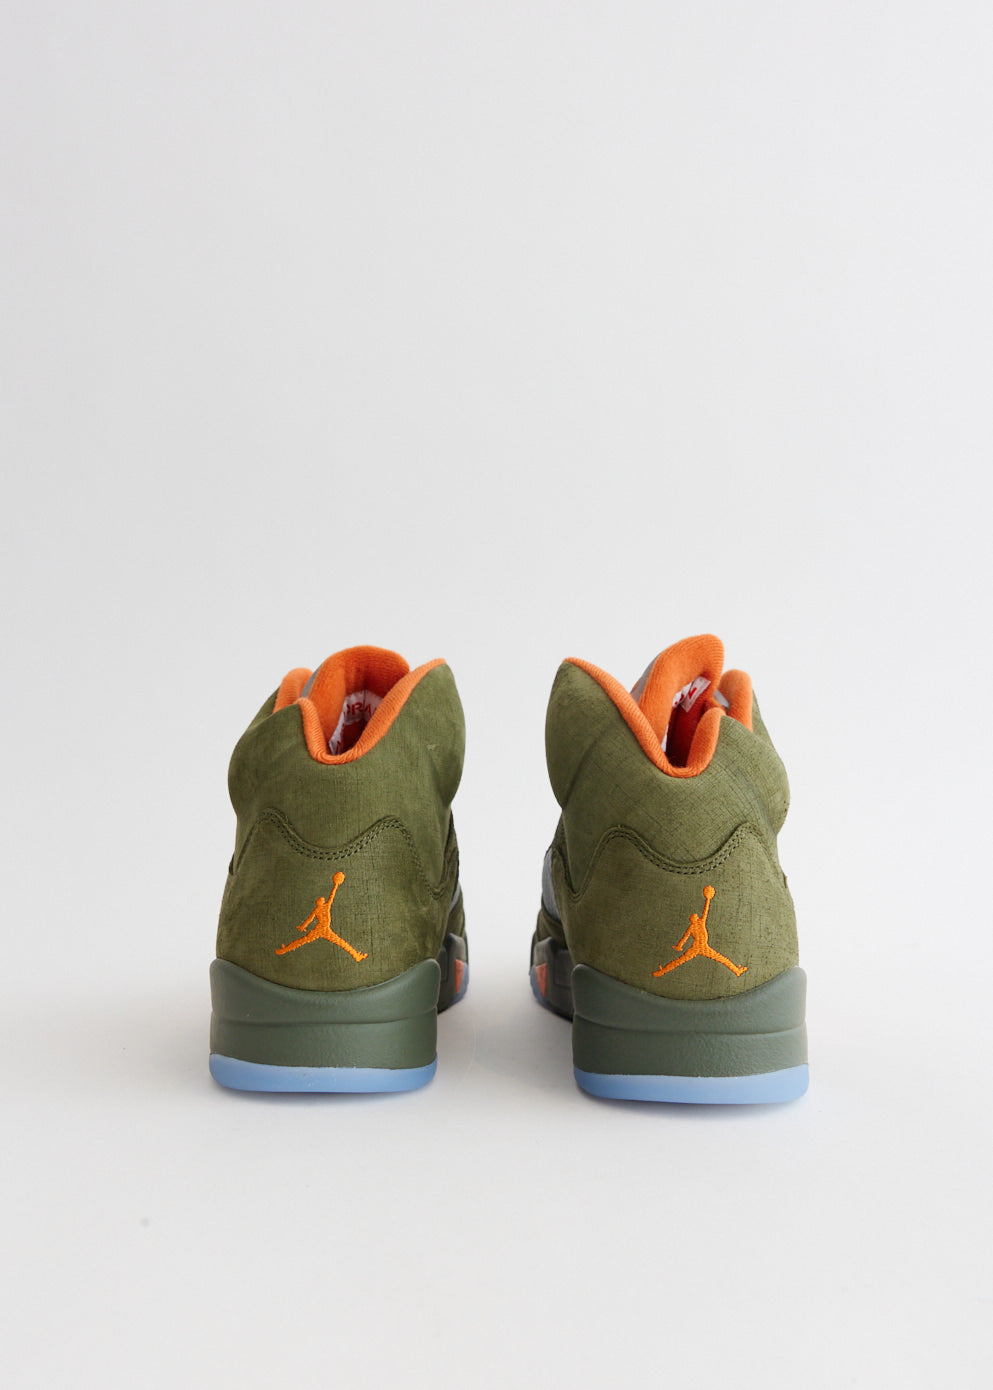 Air Jordan 5 Retro 'Olive' Sneakers